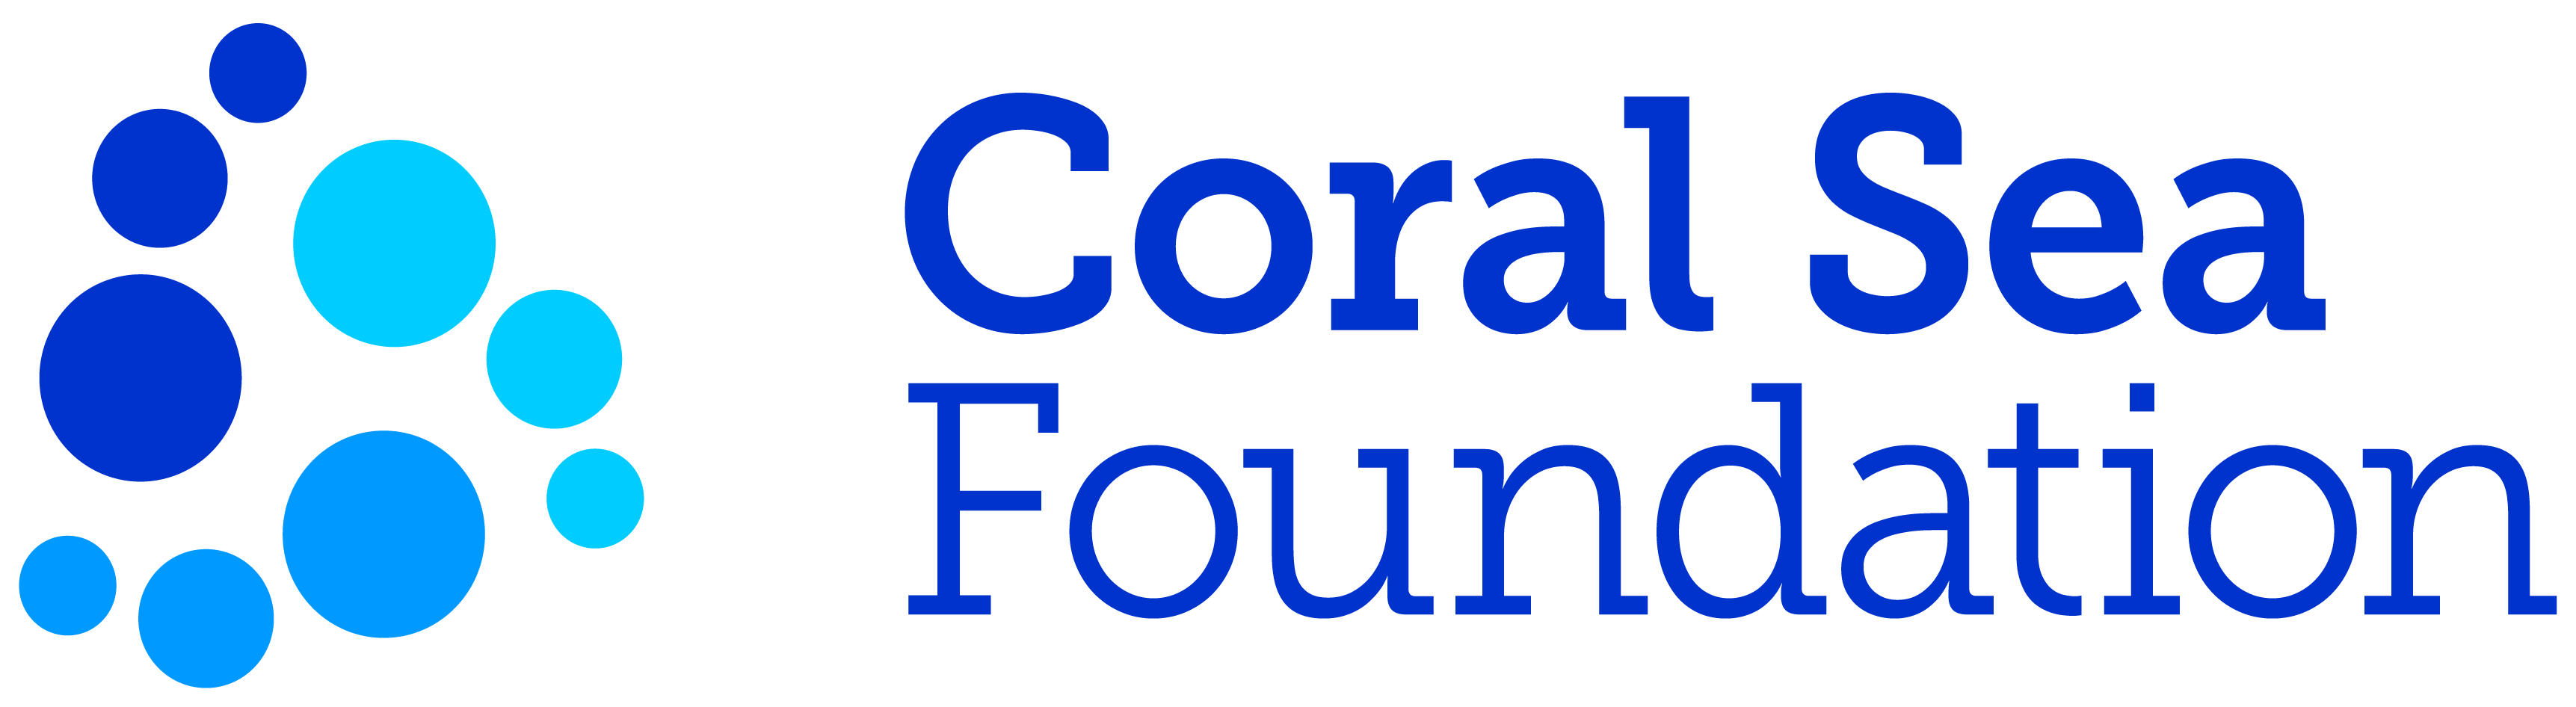 Coral Sea Foundation